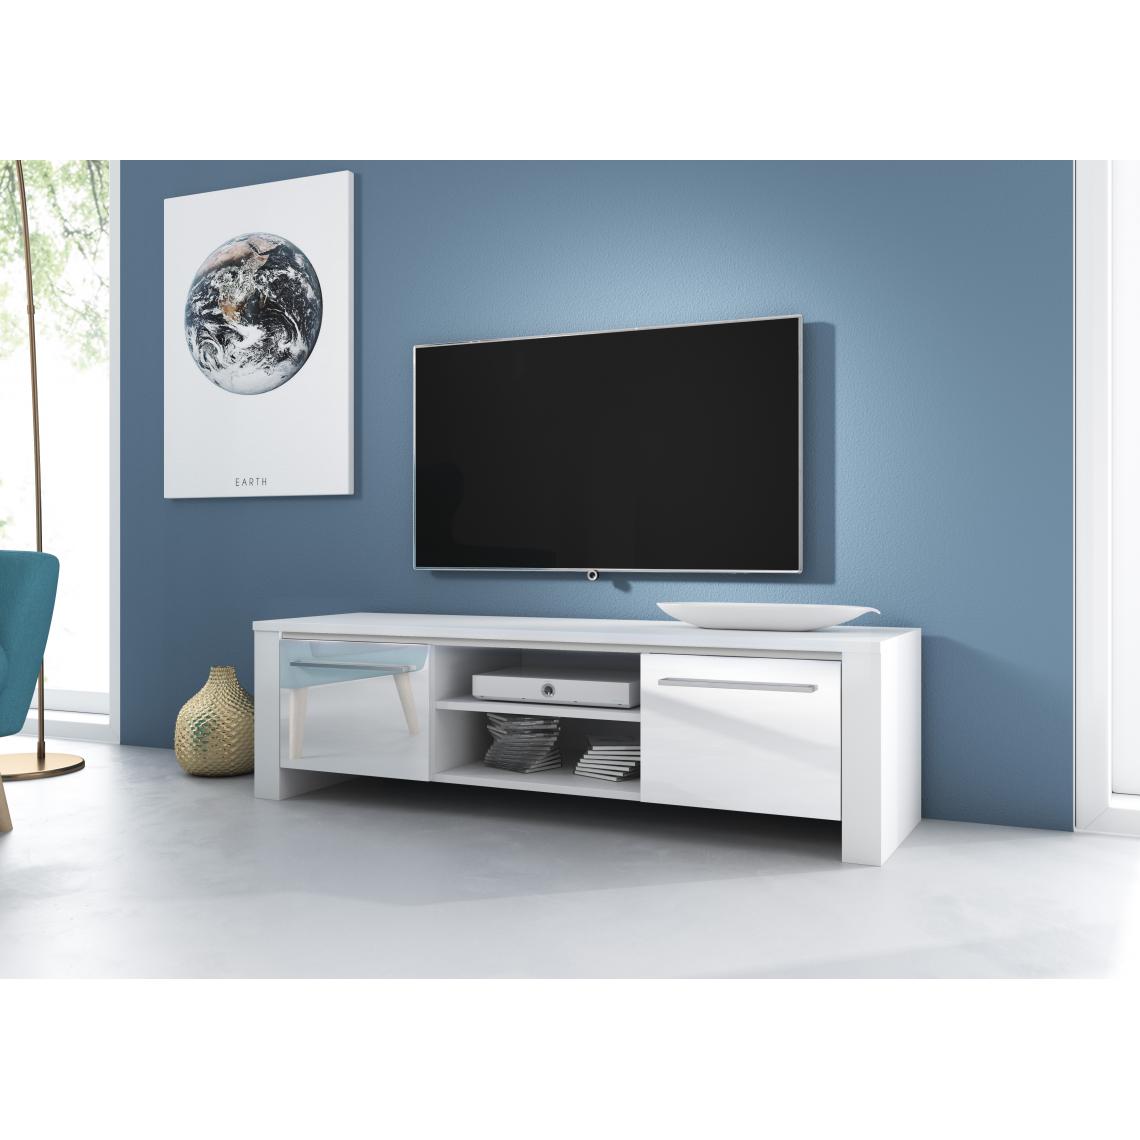 3xeliving - Moderner TV-Ständer Canaris weiß / weiß glänzend 140 cm - Meubles TV, Hi-Fi